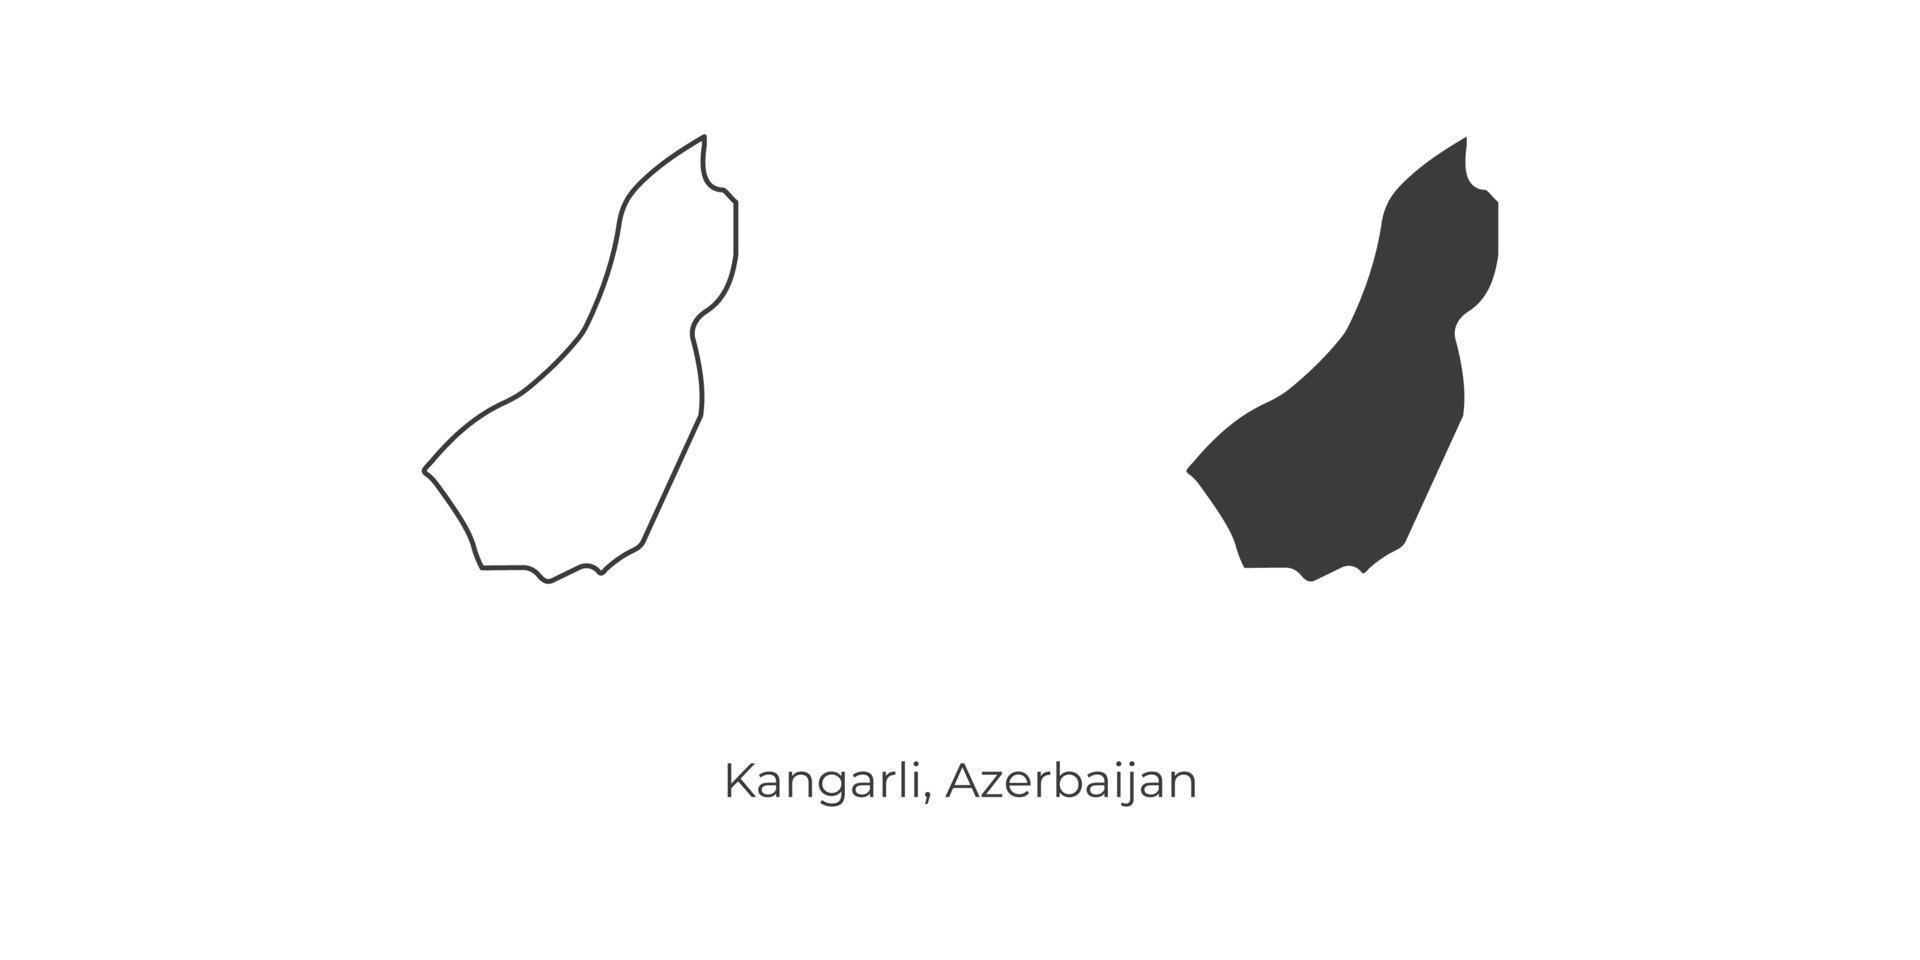 ilustração em vetor simples do mapa de kangarli, azerbaijão.